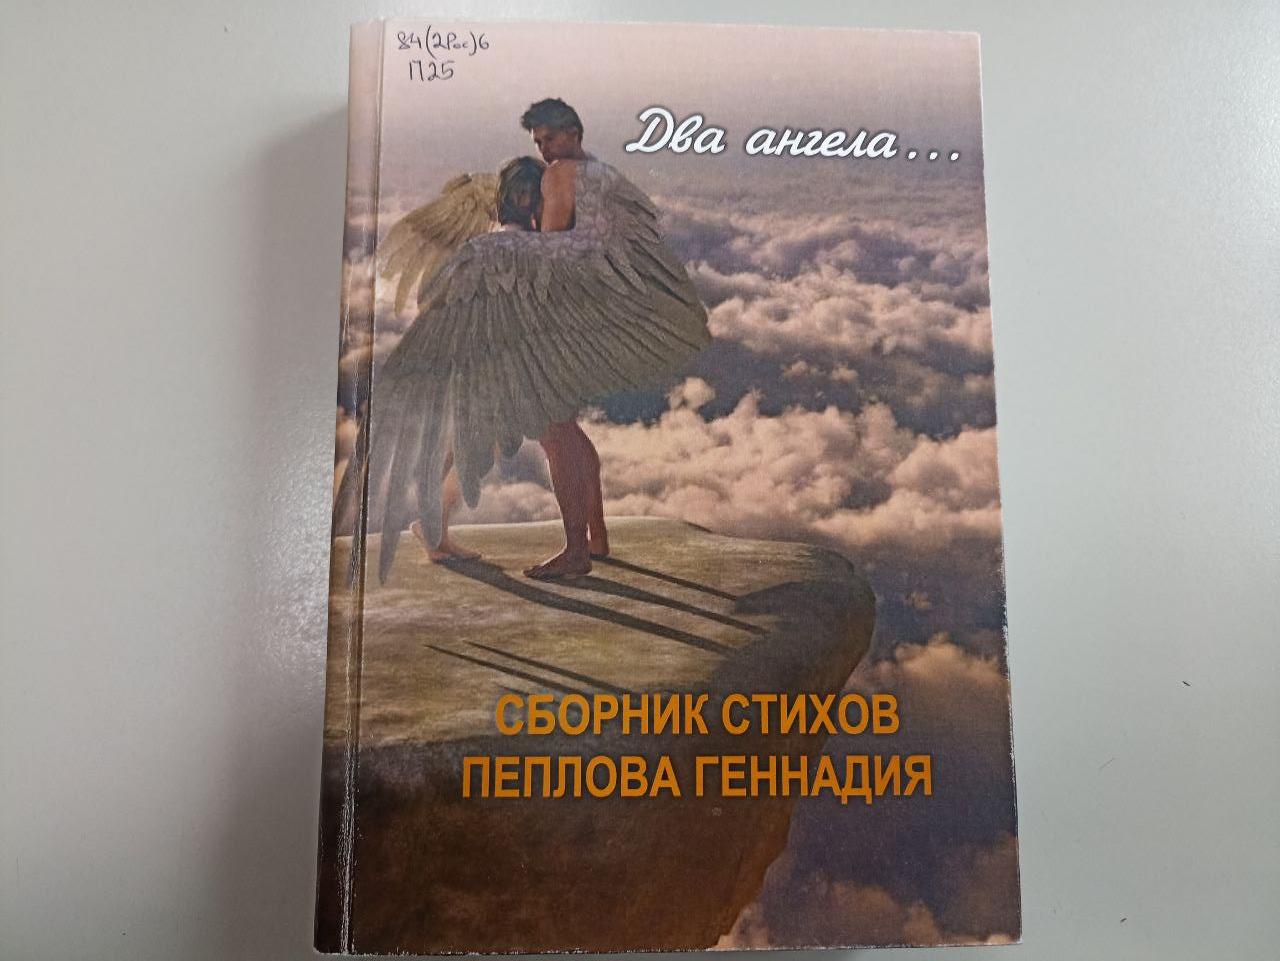 Книги уральских авторов. Геннадий Пеплов. "Два ангела..."